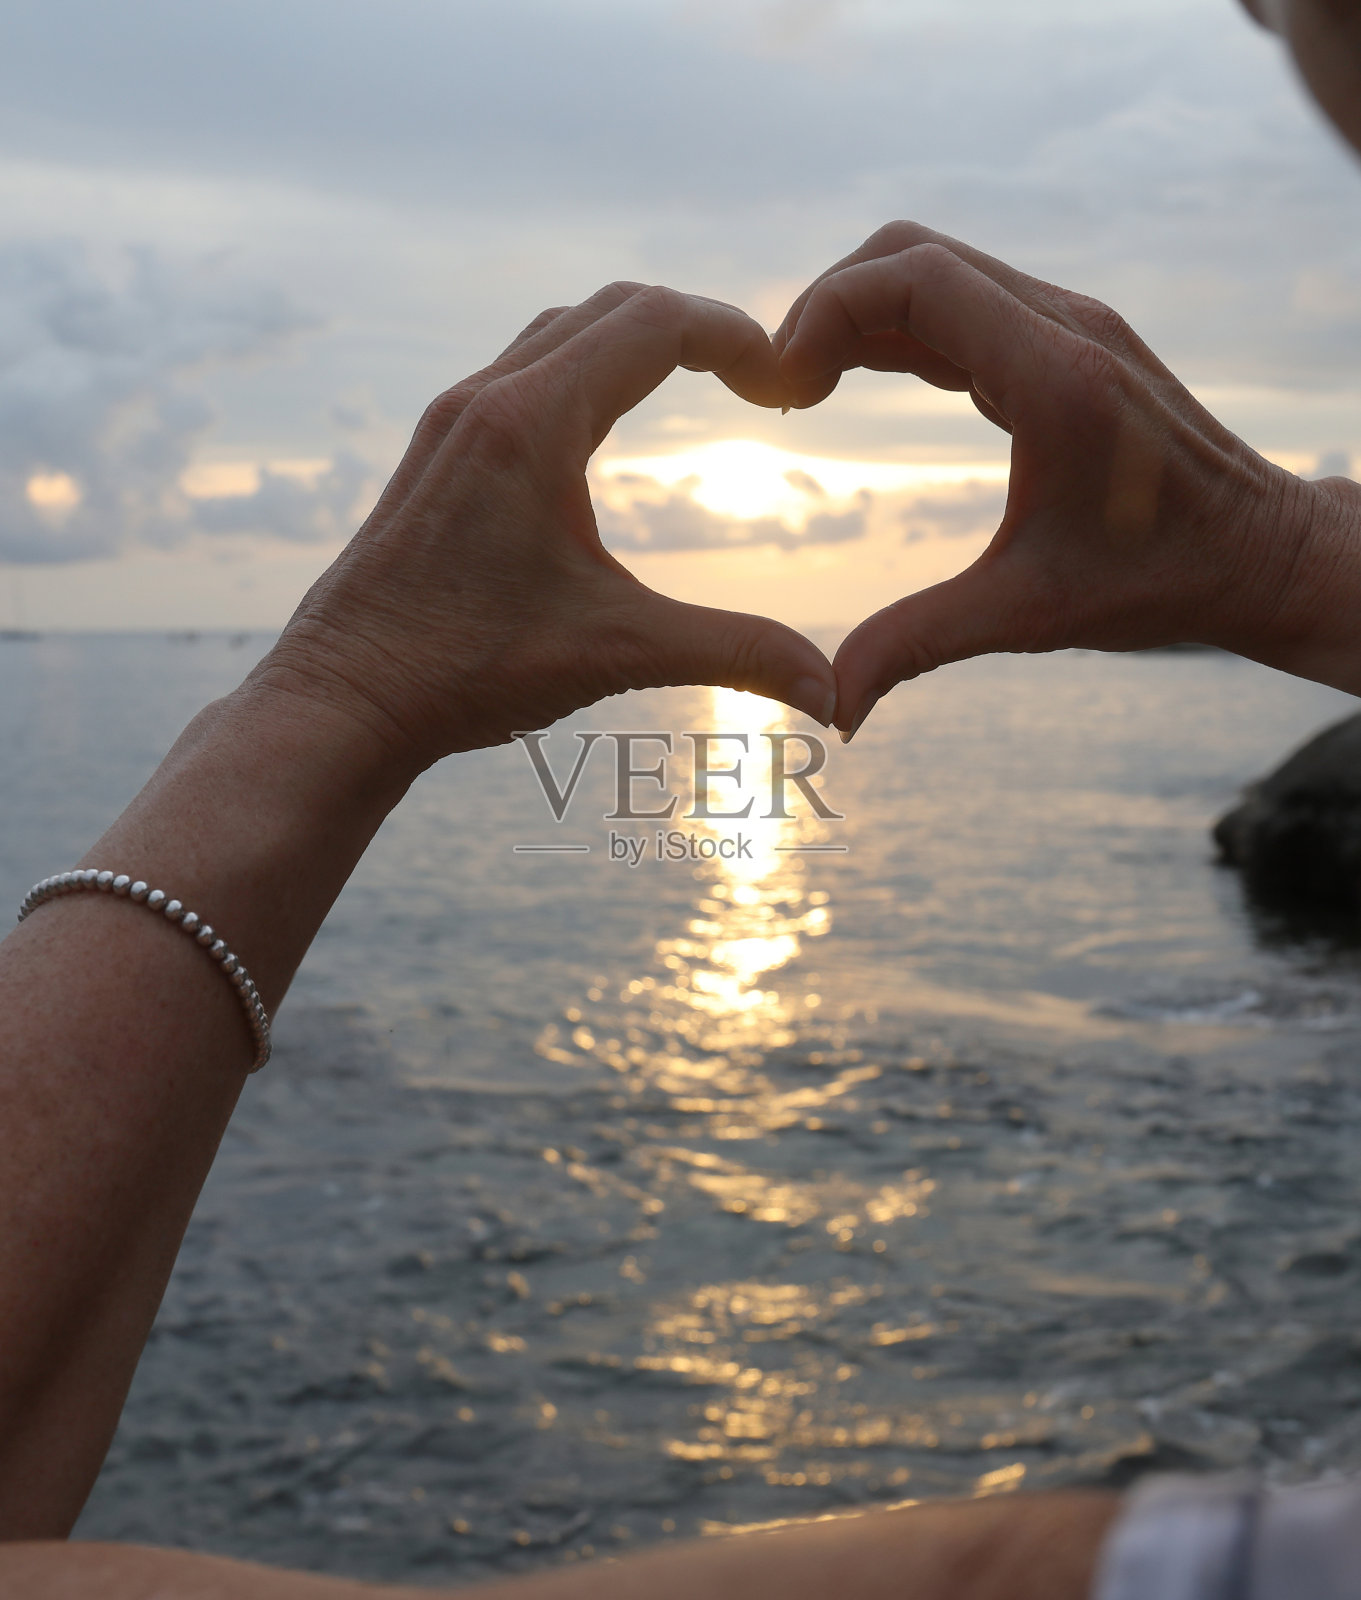 手在夕阳和大海的映衬下形成一颗心照片摄影图片